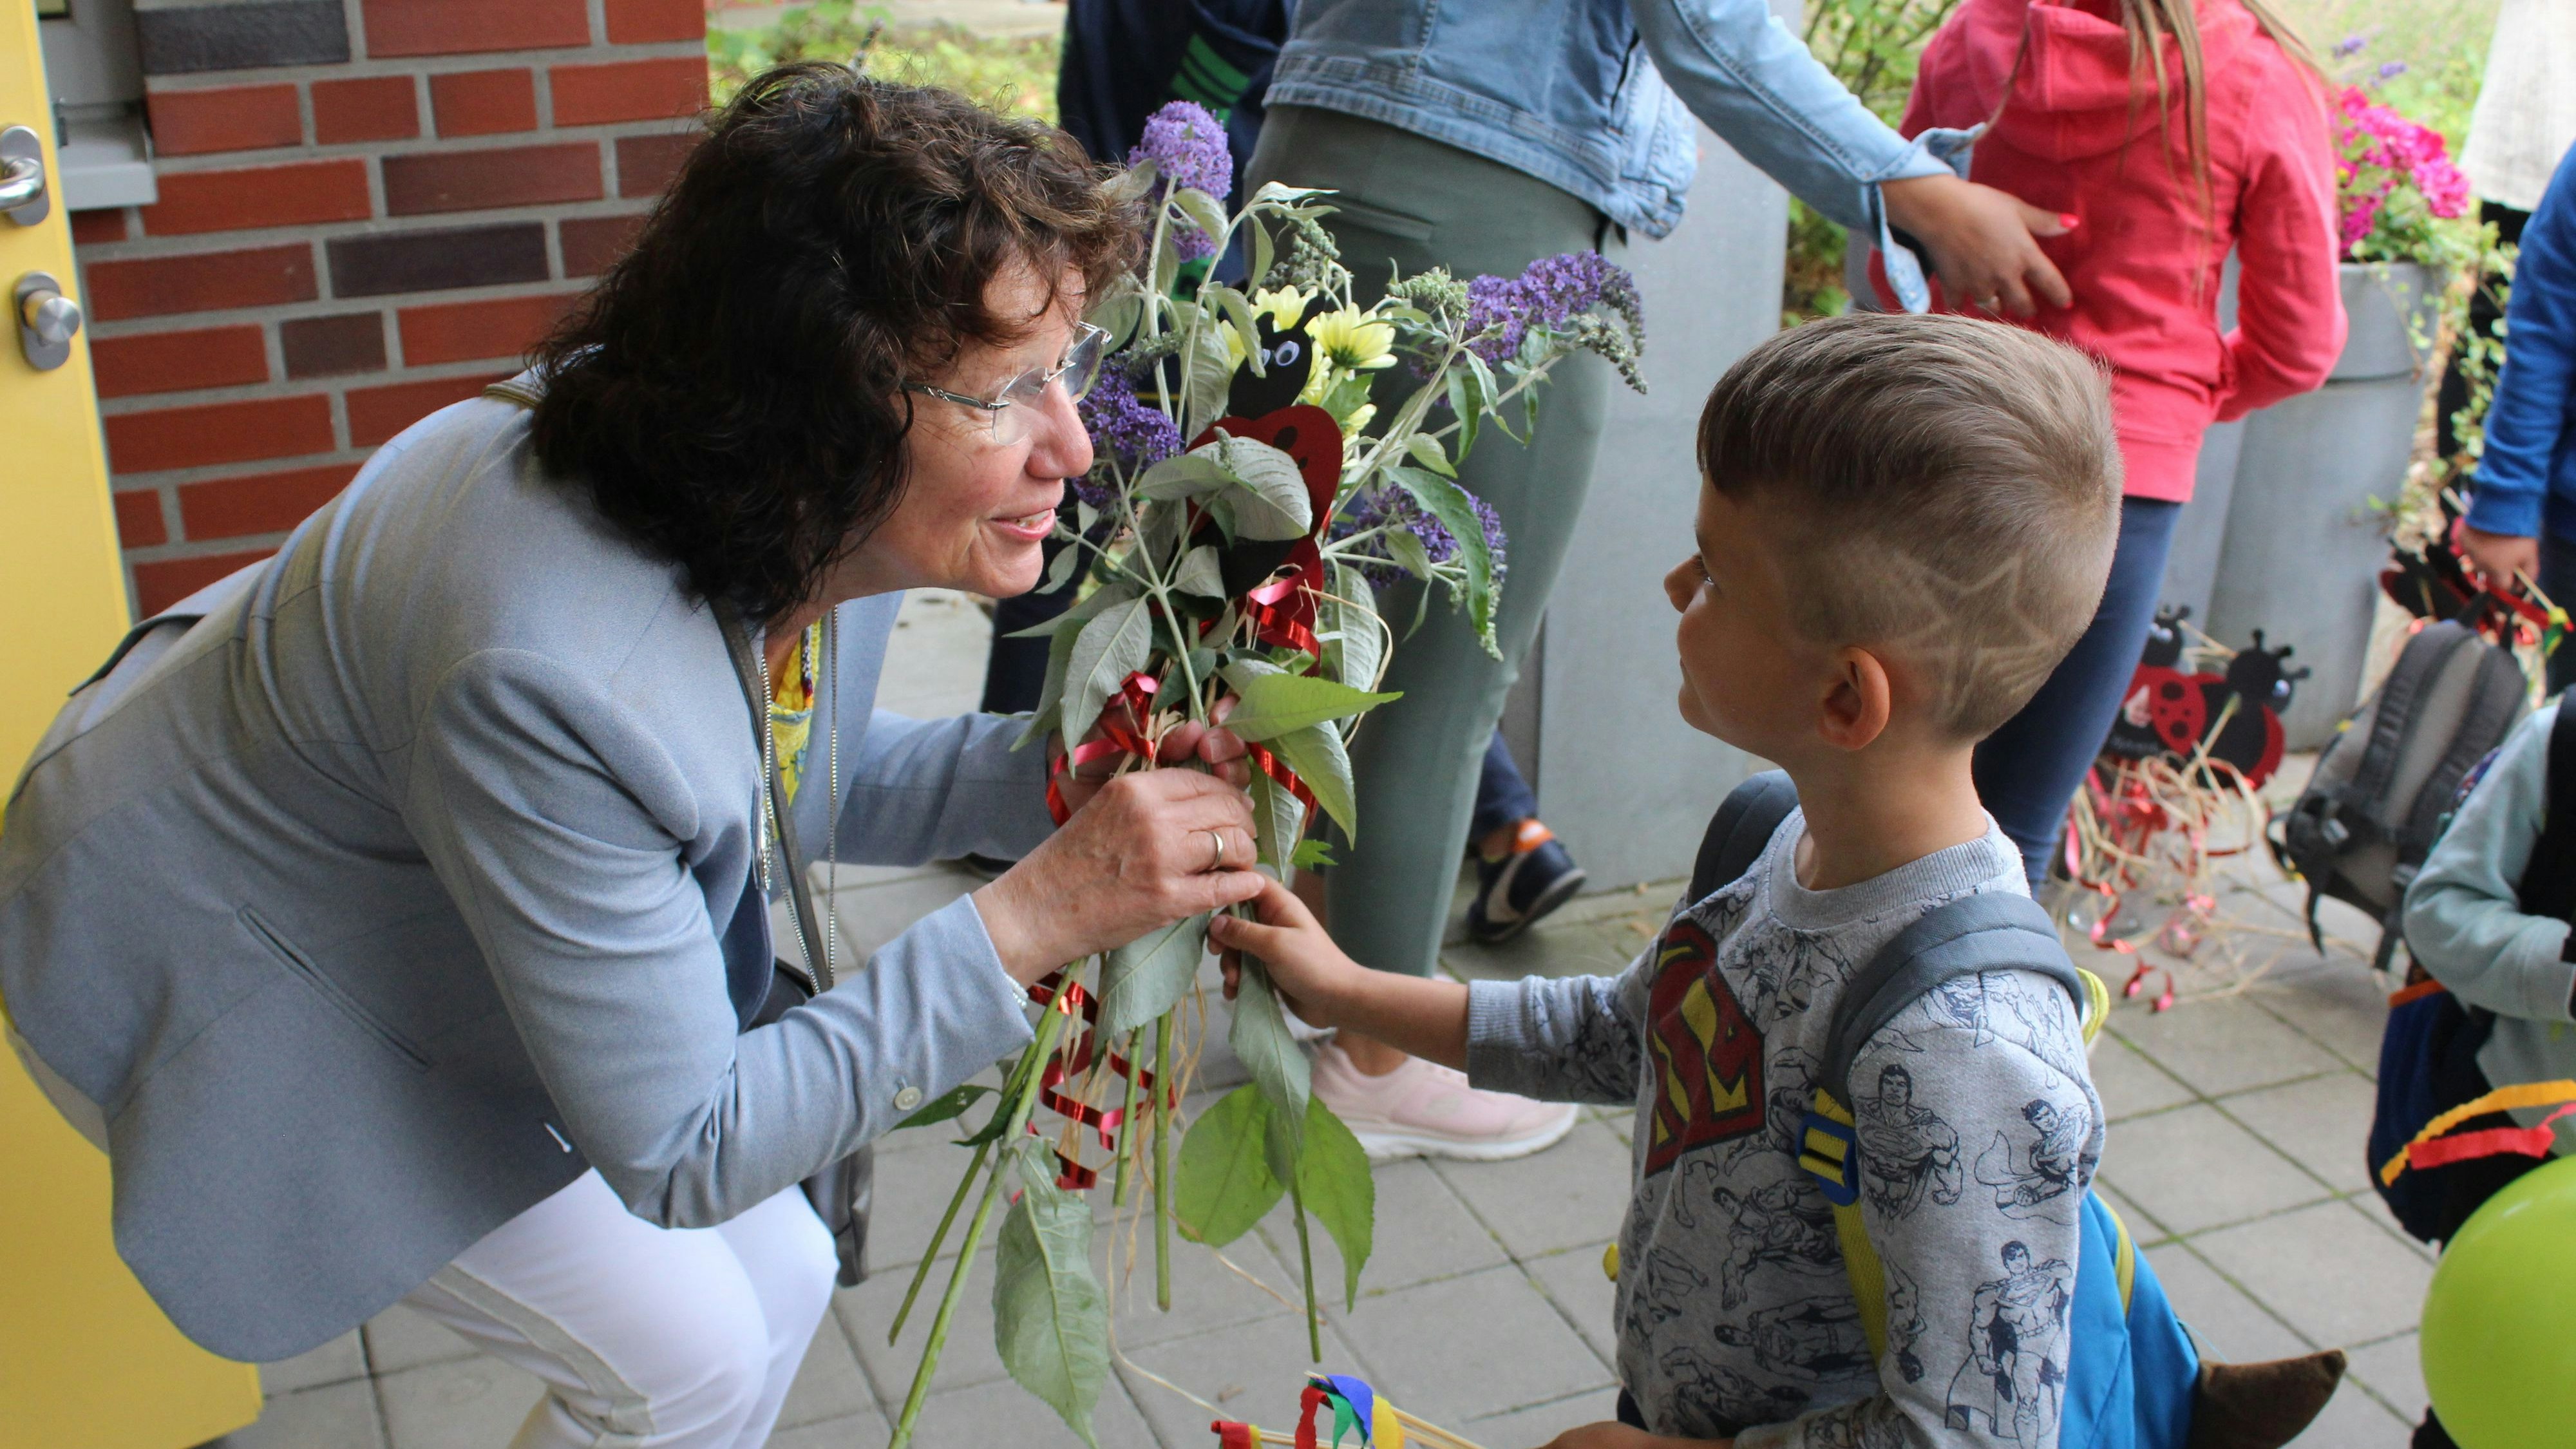 Immer auf Augenhöhe: Elisabeth Tabeling nimmt glücklich die vielen Blumen der Kinder an. Foto: Hoff